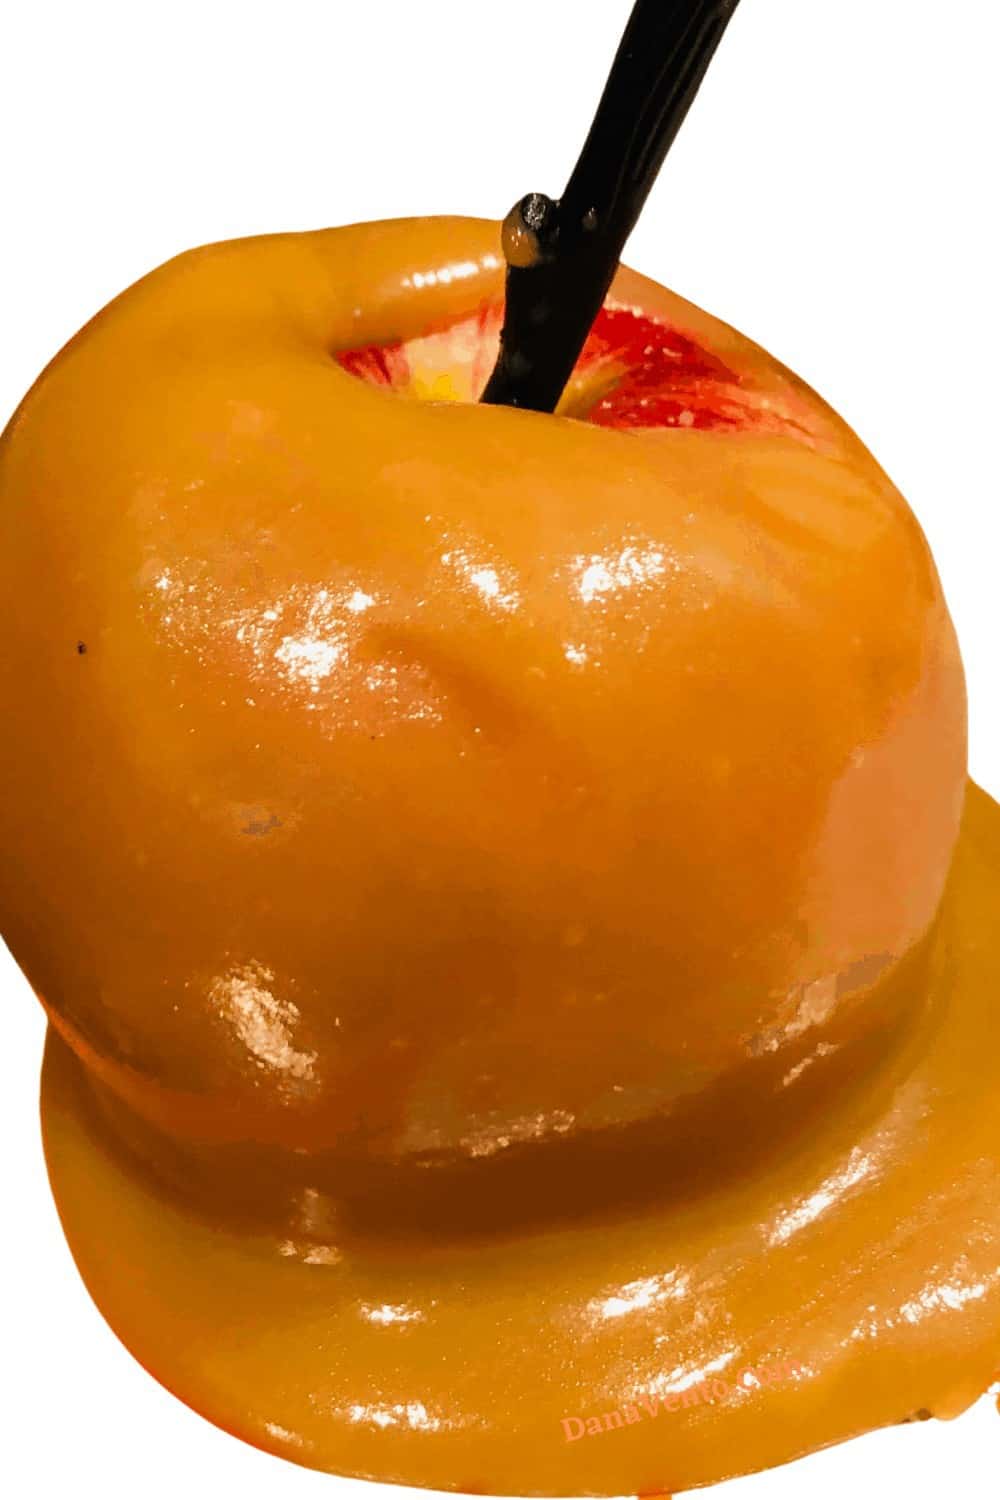 caramel apple up close